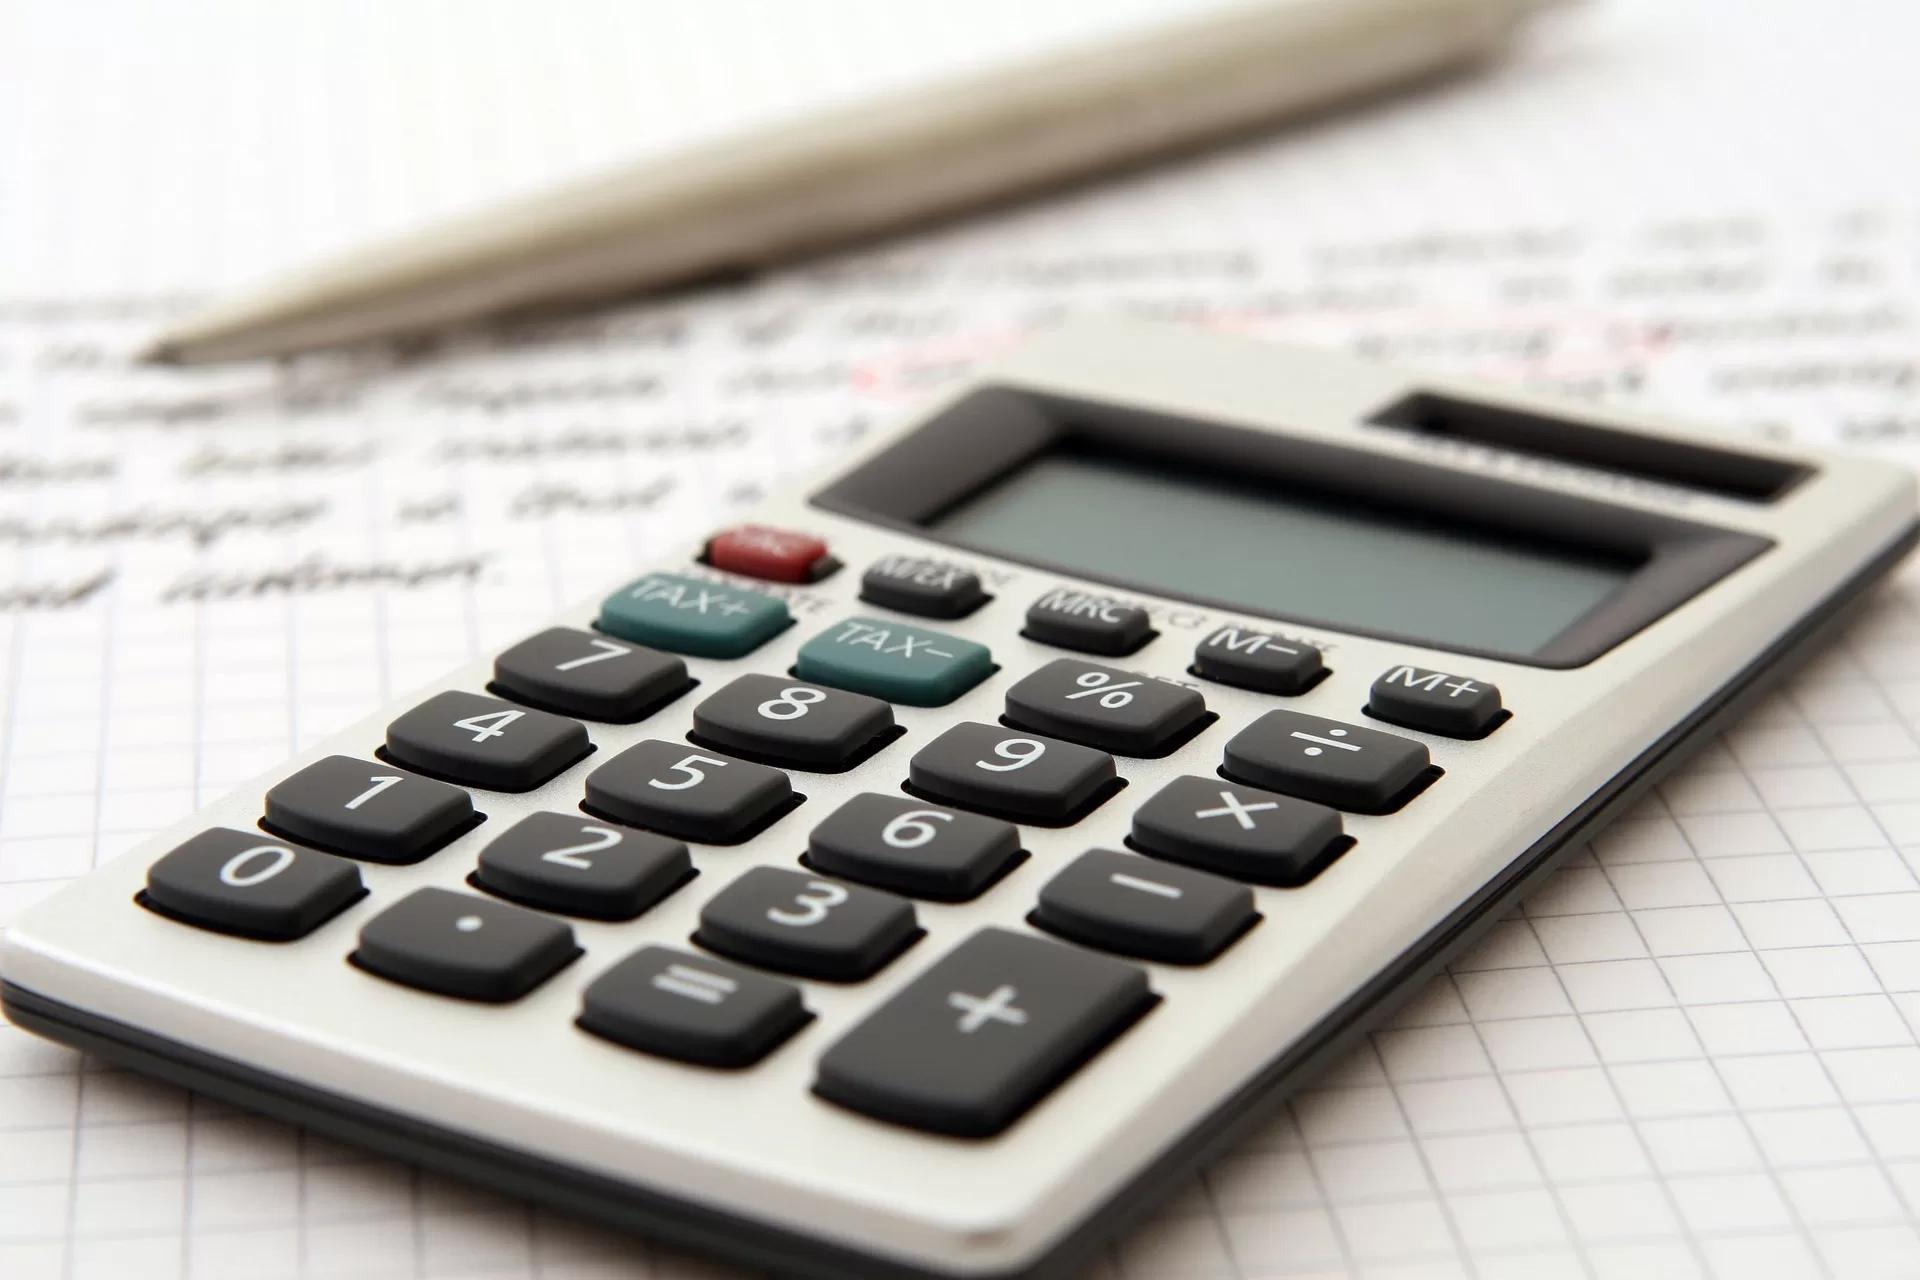 Gambar sebuah kalkulator di atas lembar catatan, ilustrasi tips bebas utang pinjol